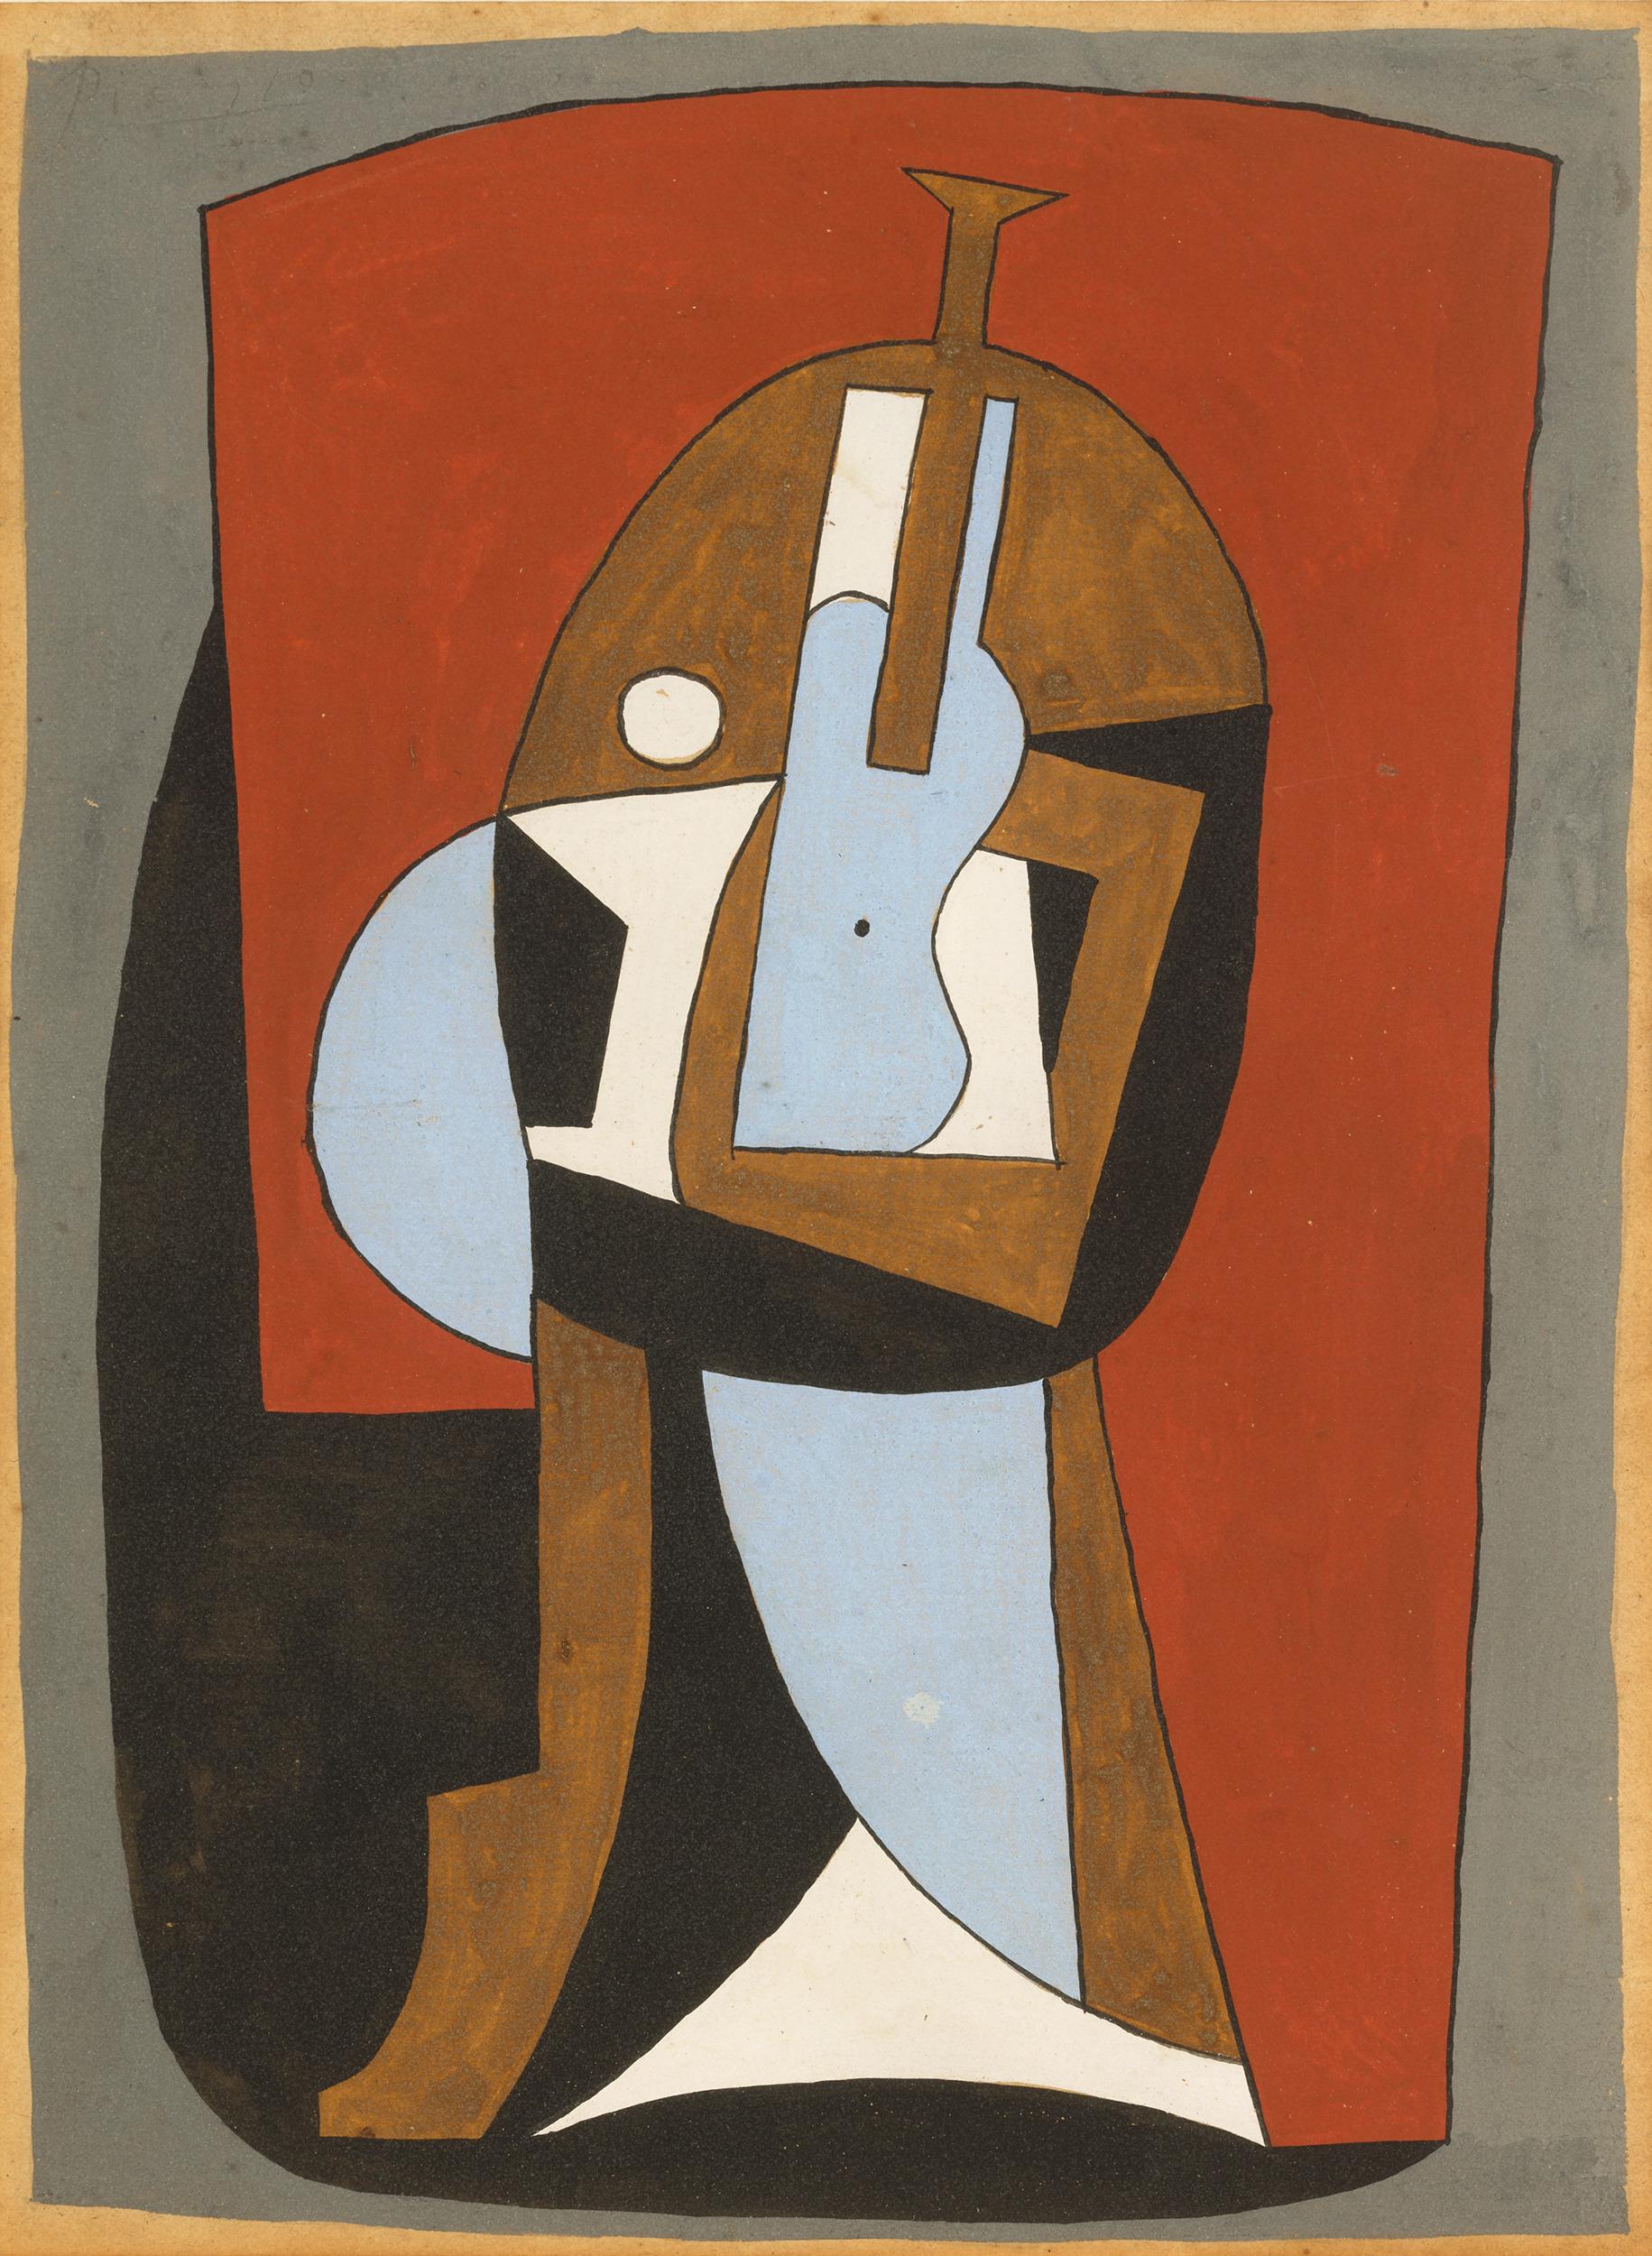 Pablo Picasso
1881-1973  Spanisch

Guitare sur un guéridon
(Gitarre auf einem Sockel)

Gouache auf Papier auf Karton aufgelegt
Signiert "Picasso" (oben links)

Picassos produktive Karriere war von vielen großen Liebesaffären geprägt, sowohl